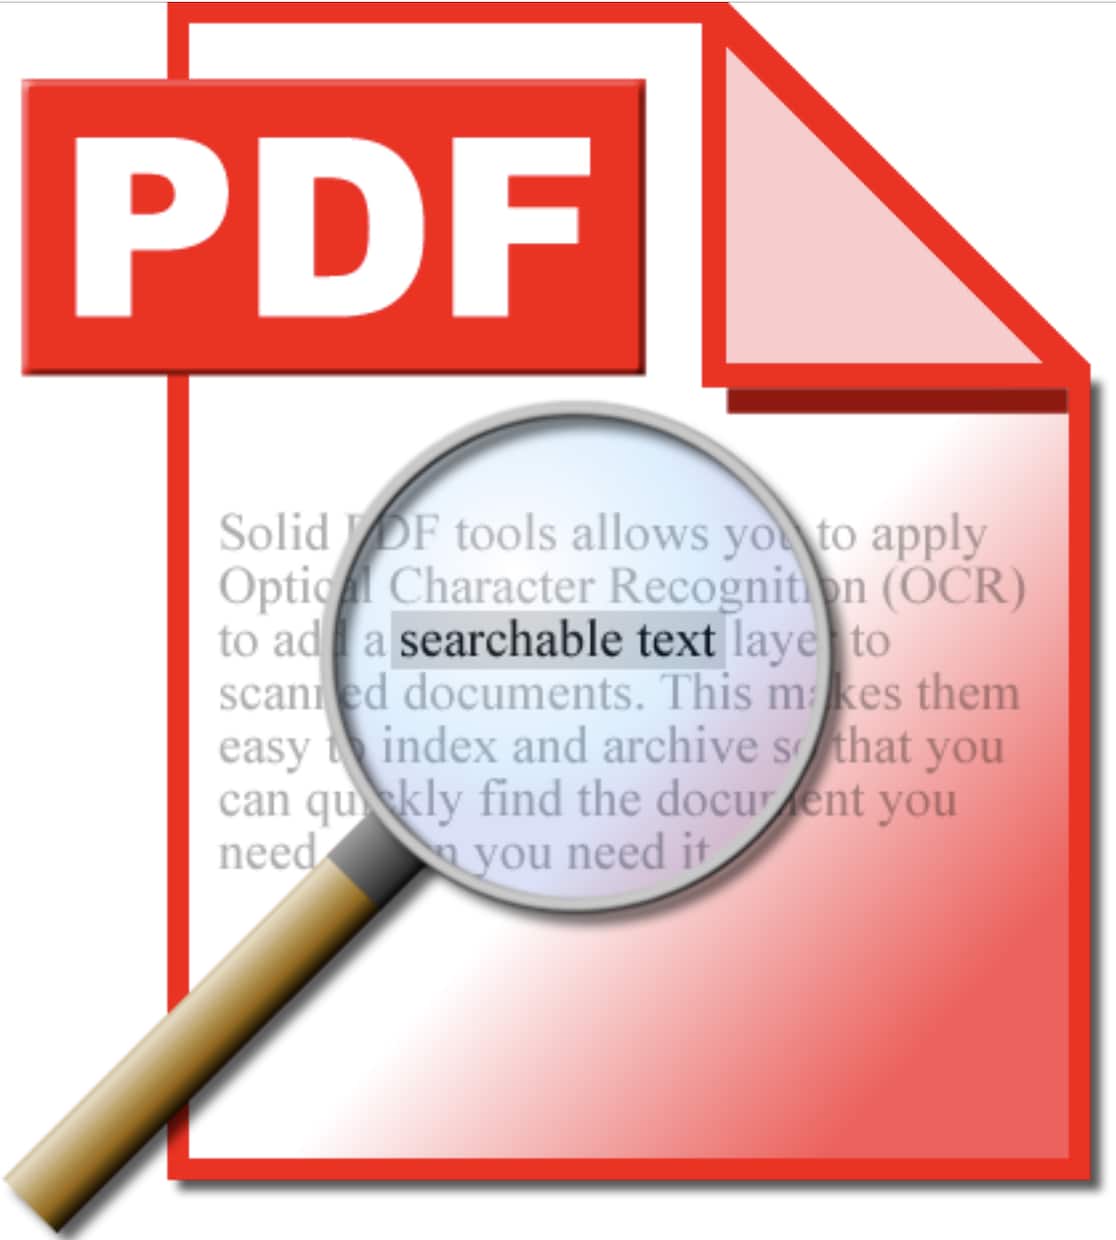 PDFに関することなら何でも承ります 文章ファイルのPDF化！PDFファイル操作全般を対応します！ イメージ1